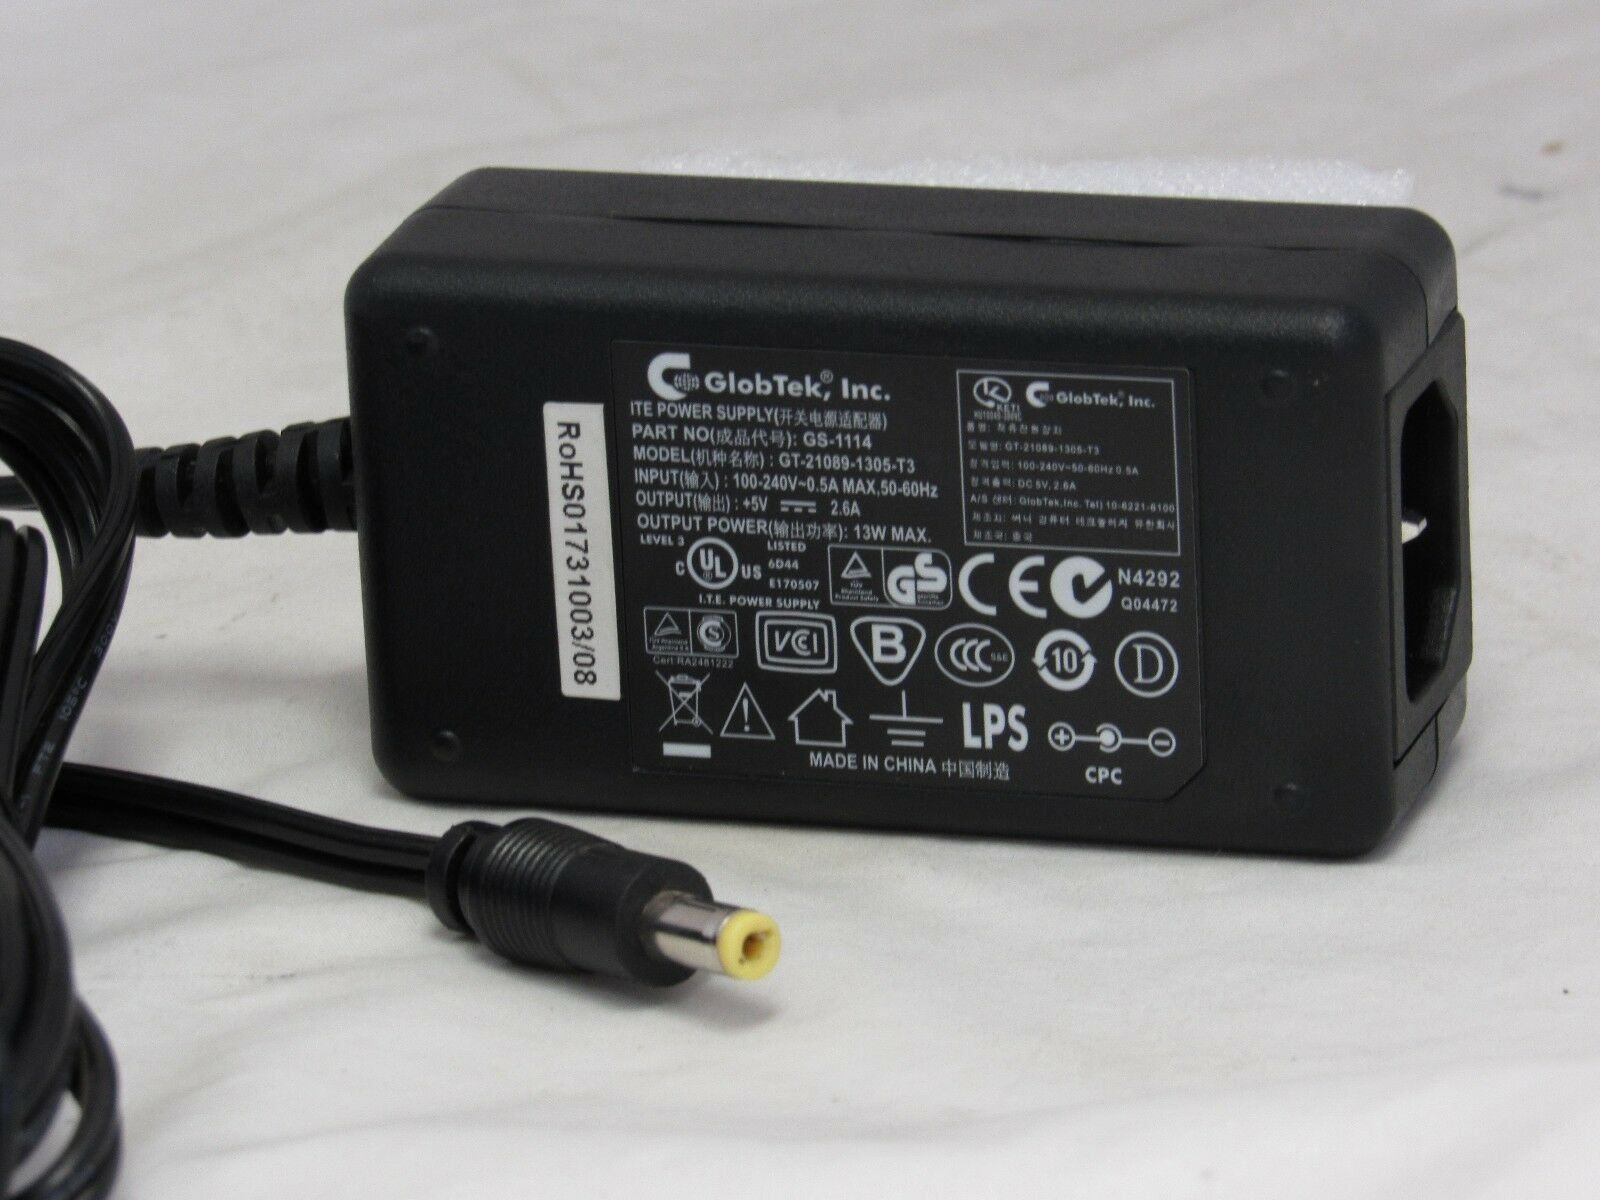 GlobTek ITE Powersupply AC Adapter GT-21089-1305-T3 EW Compatible Brand: power supply Type: power supply Max. Output